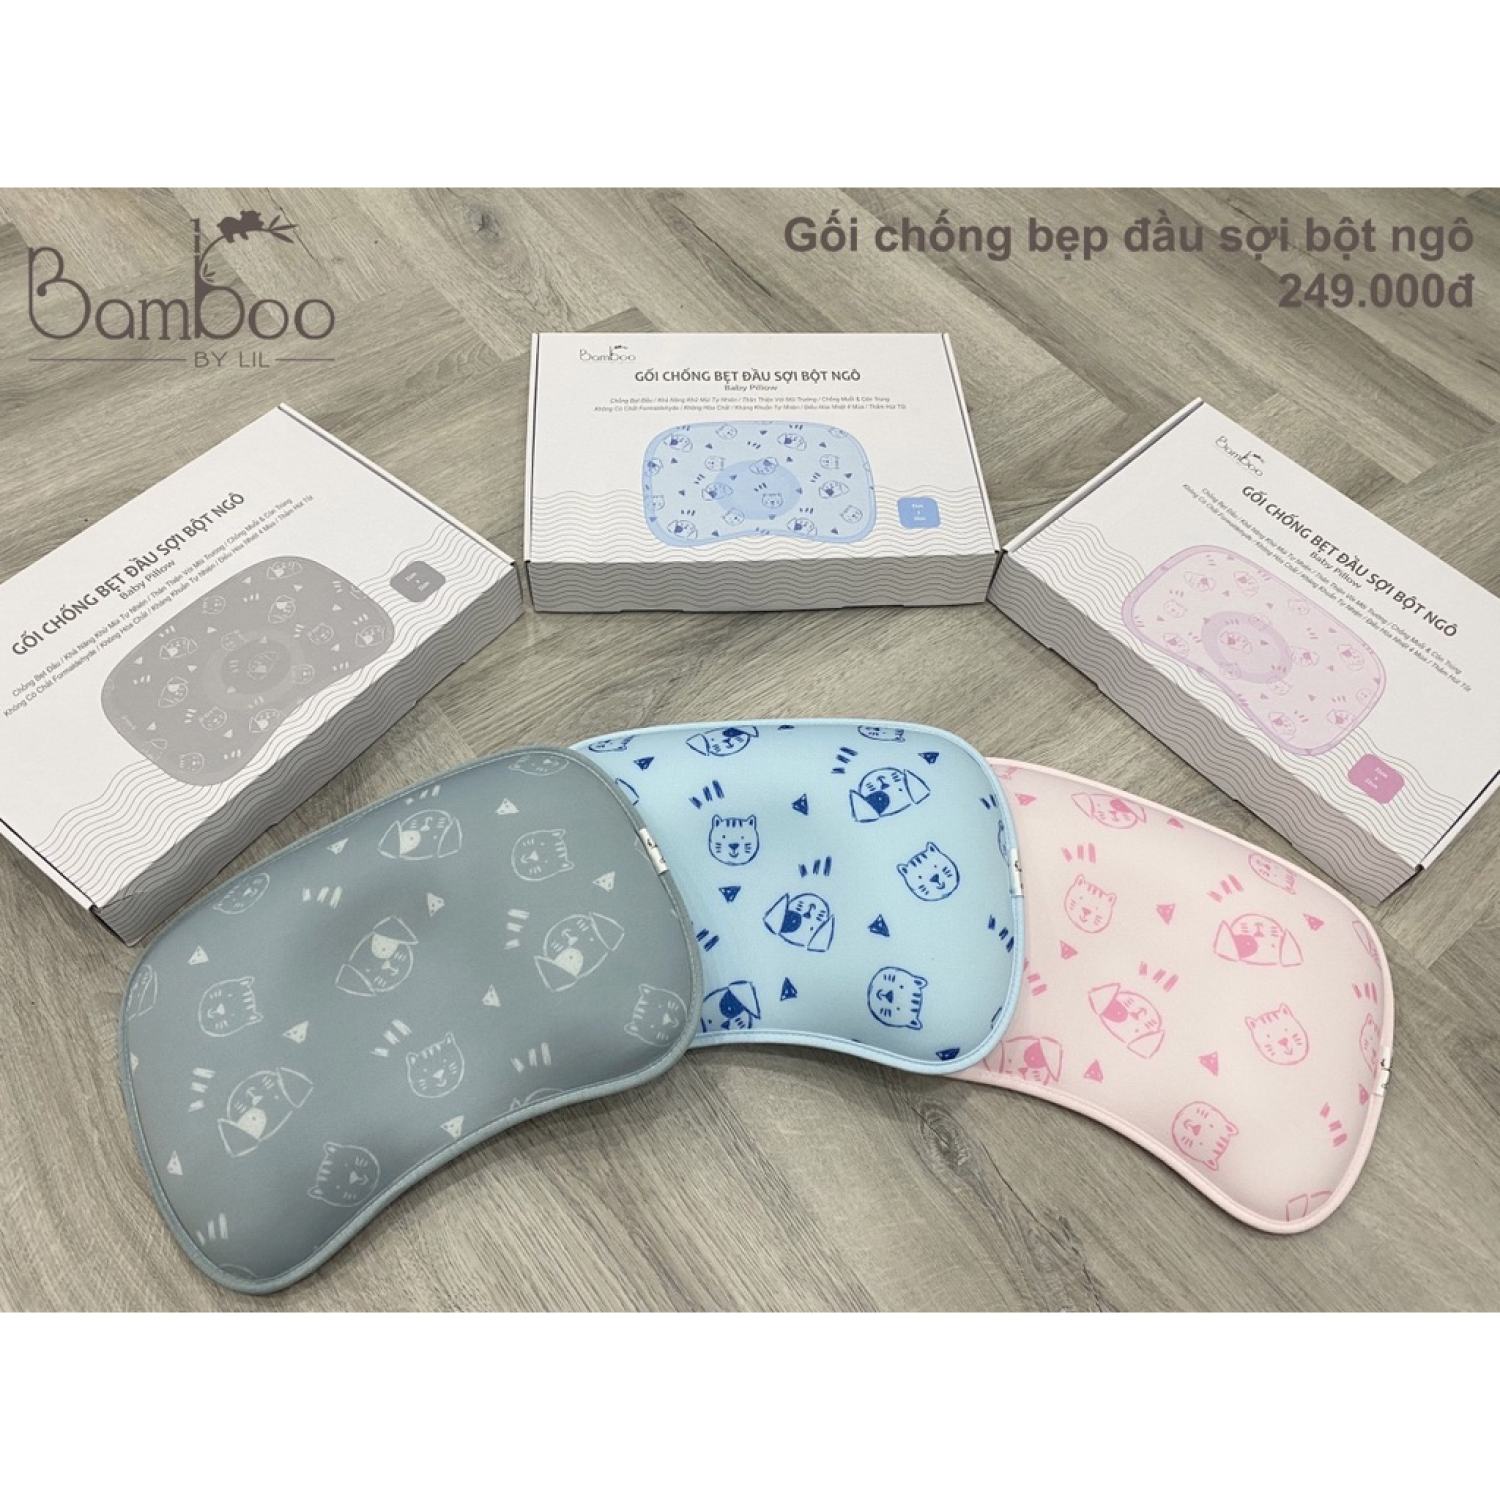 gối chống bẹp đầu sợi bột ngô bamboo by lil mẫu mới cho bé minizon kids 2